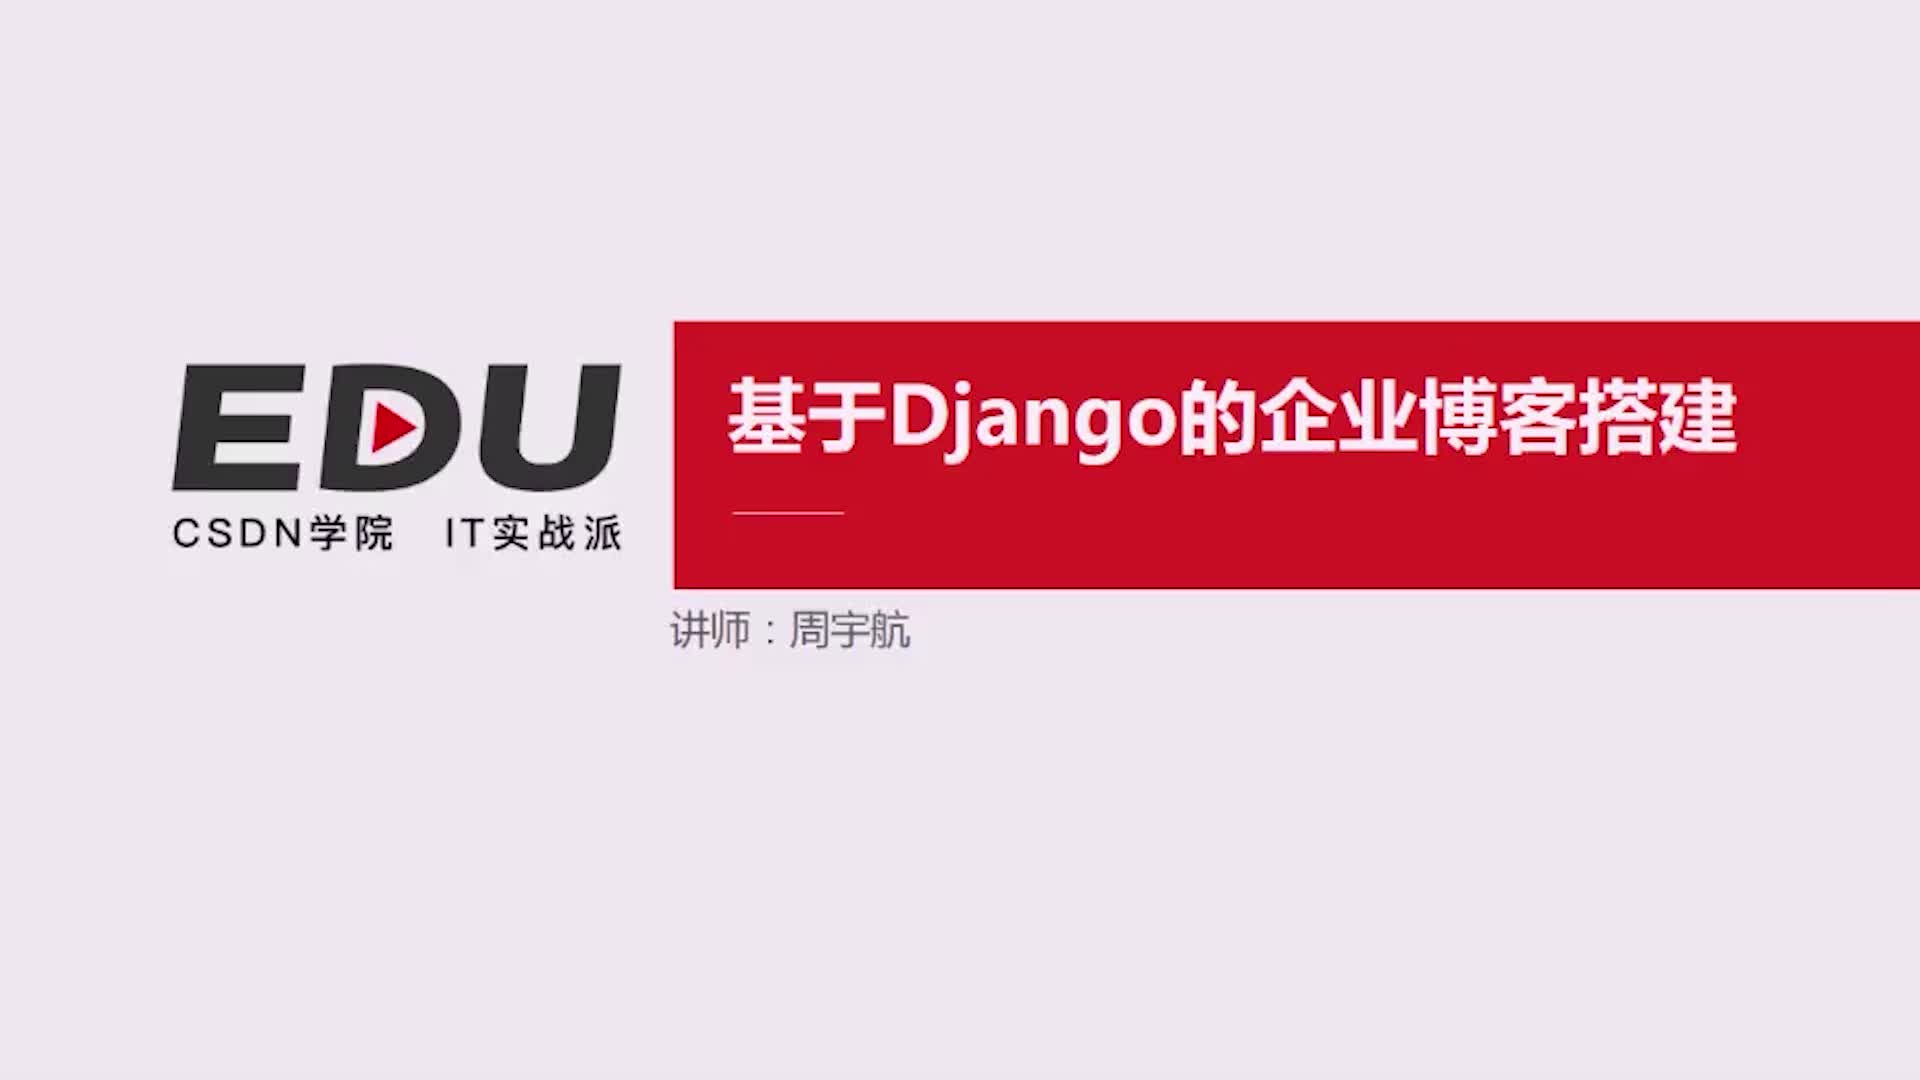 Django企业博客搭建实战+理智应对Python就业——直播回放